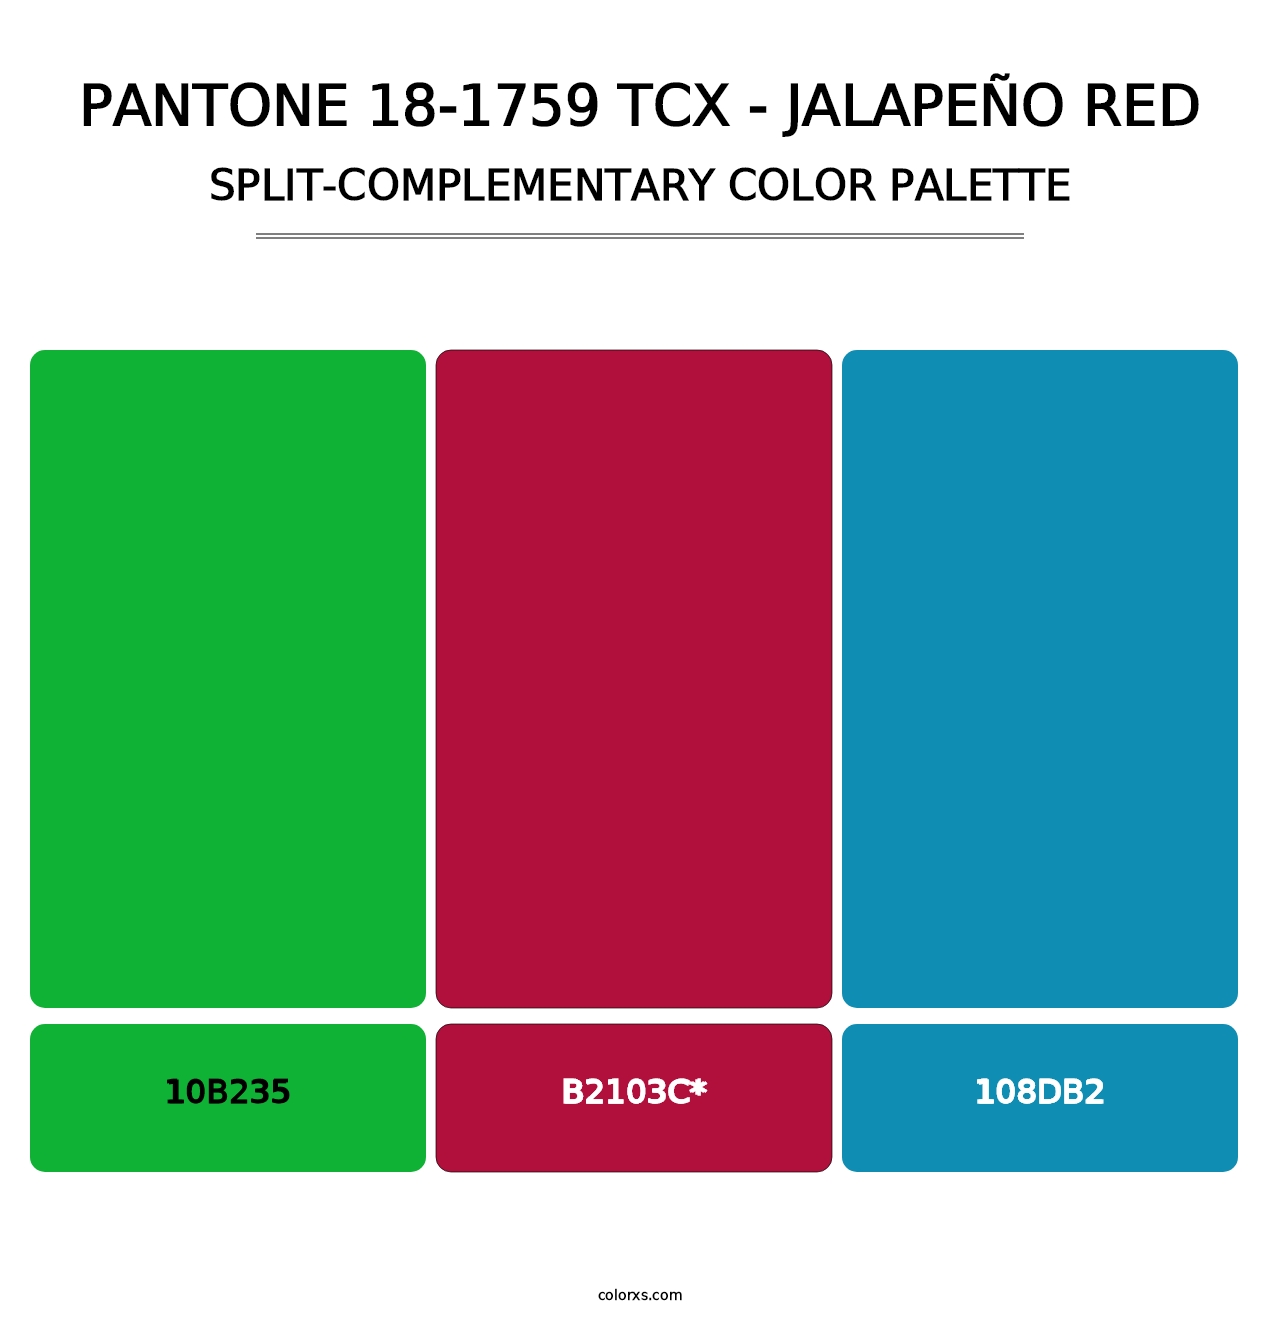 PANTONE 18-1759 TCX - Jalapeño Red - Split-Complementary Color Palette